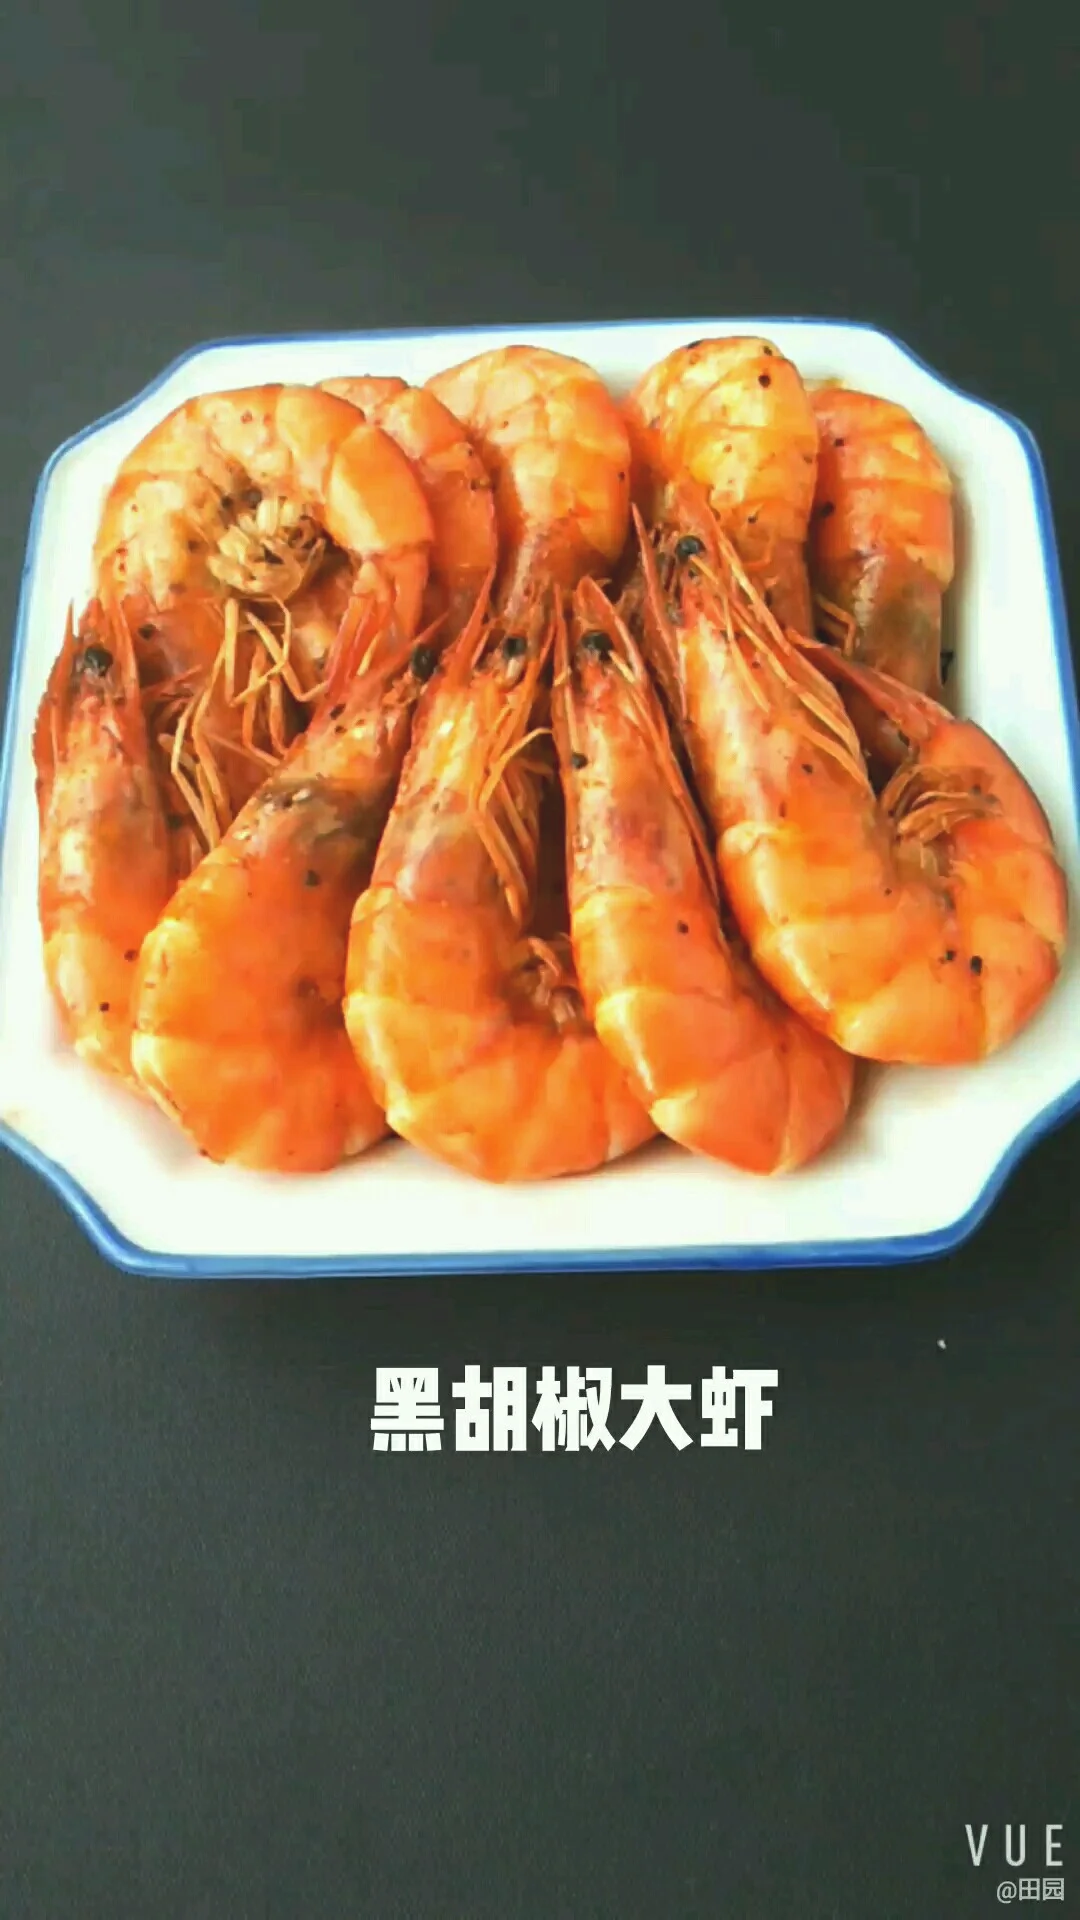 黑胡椒大虾的做法-黑椒味煎菜谱